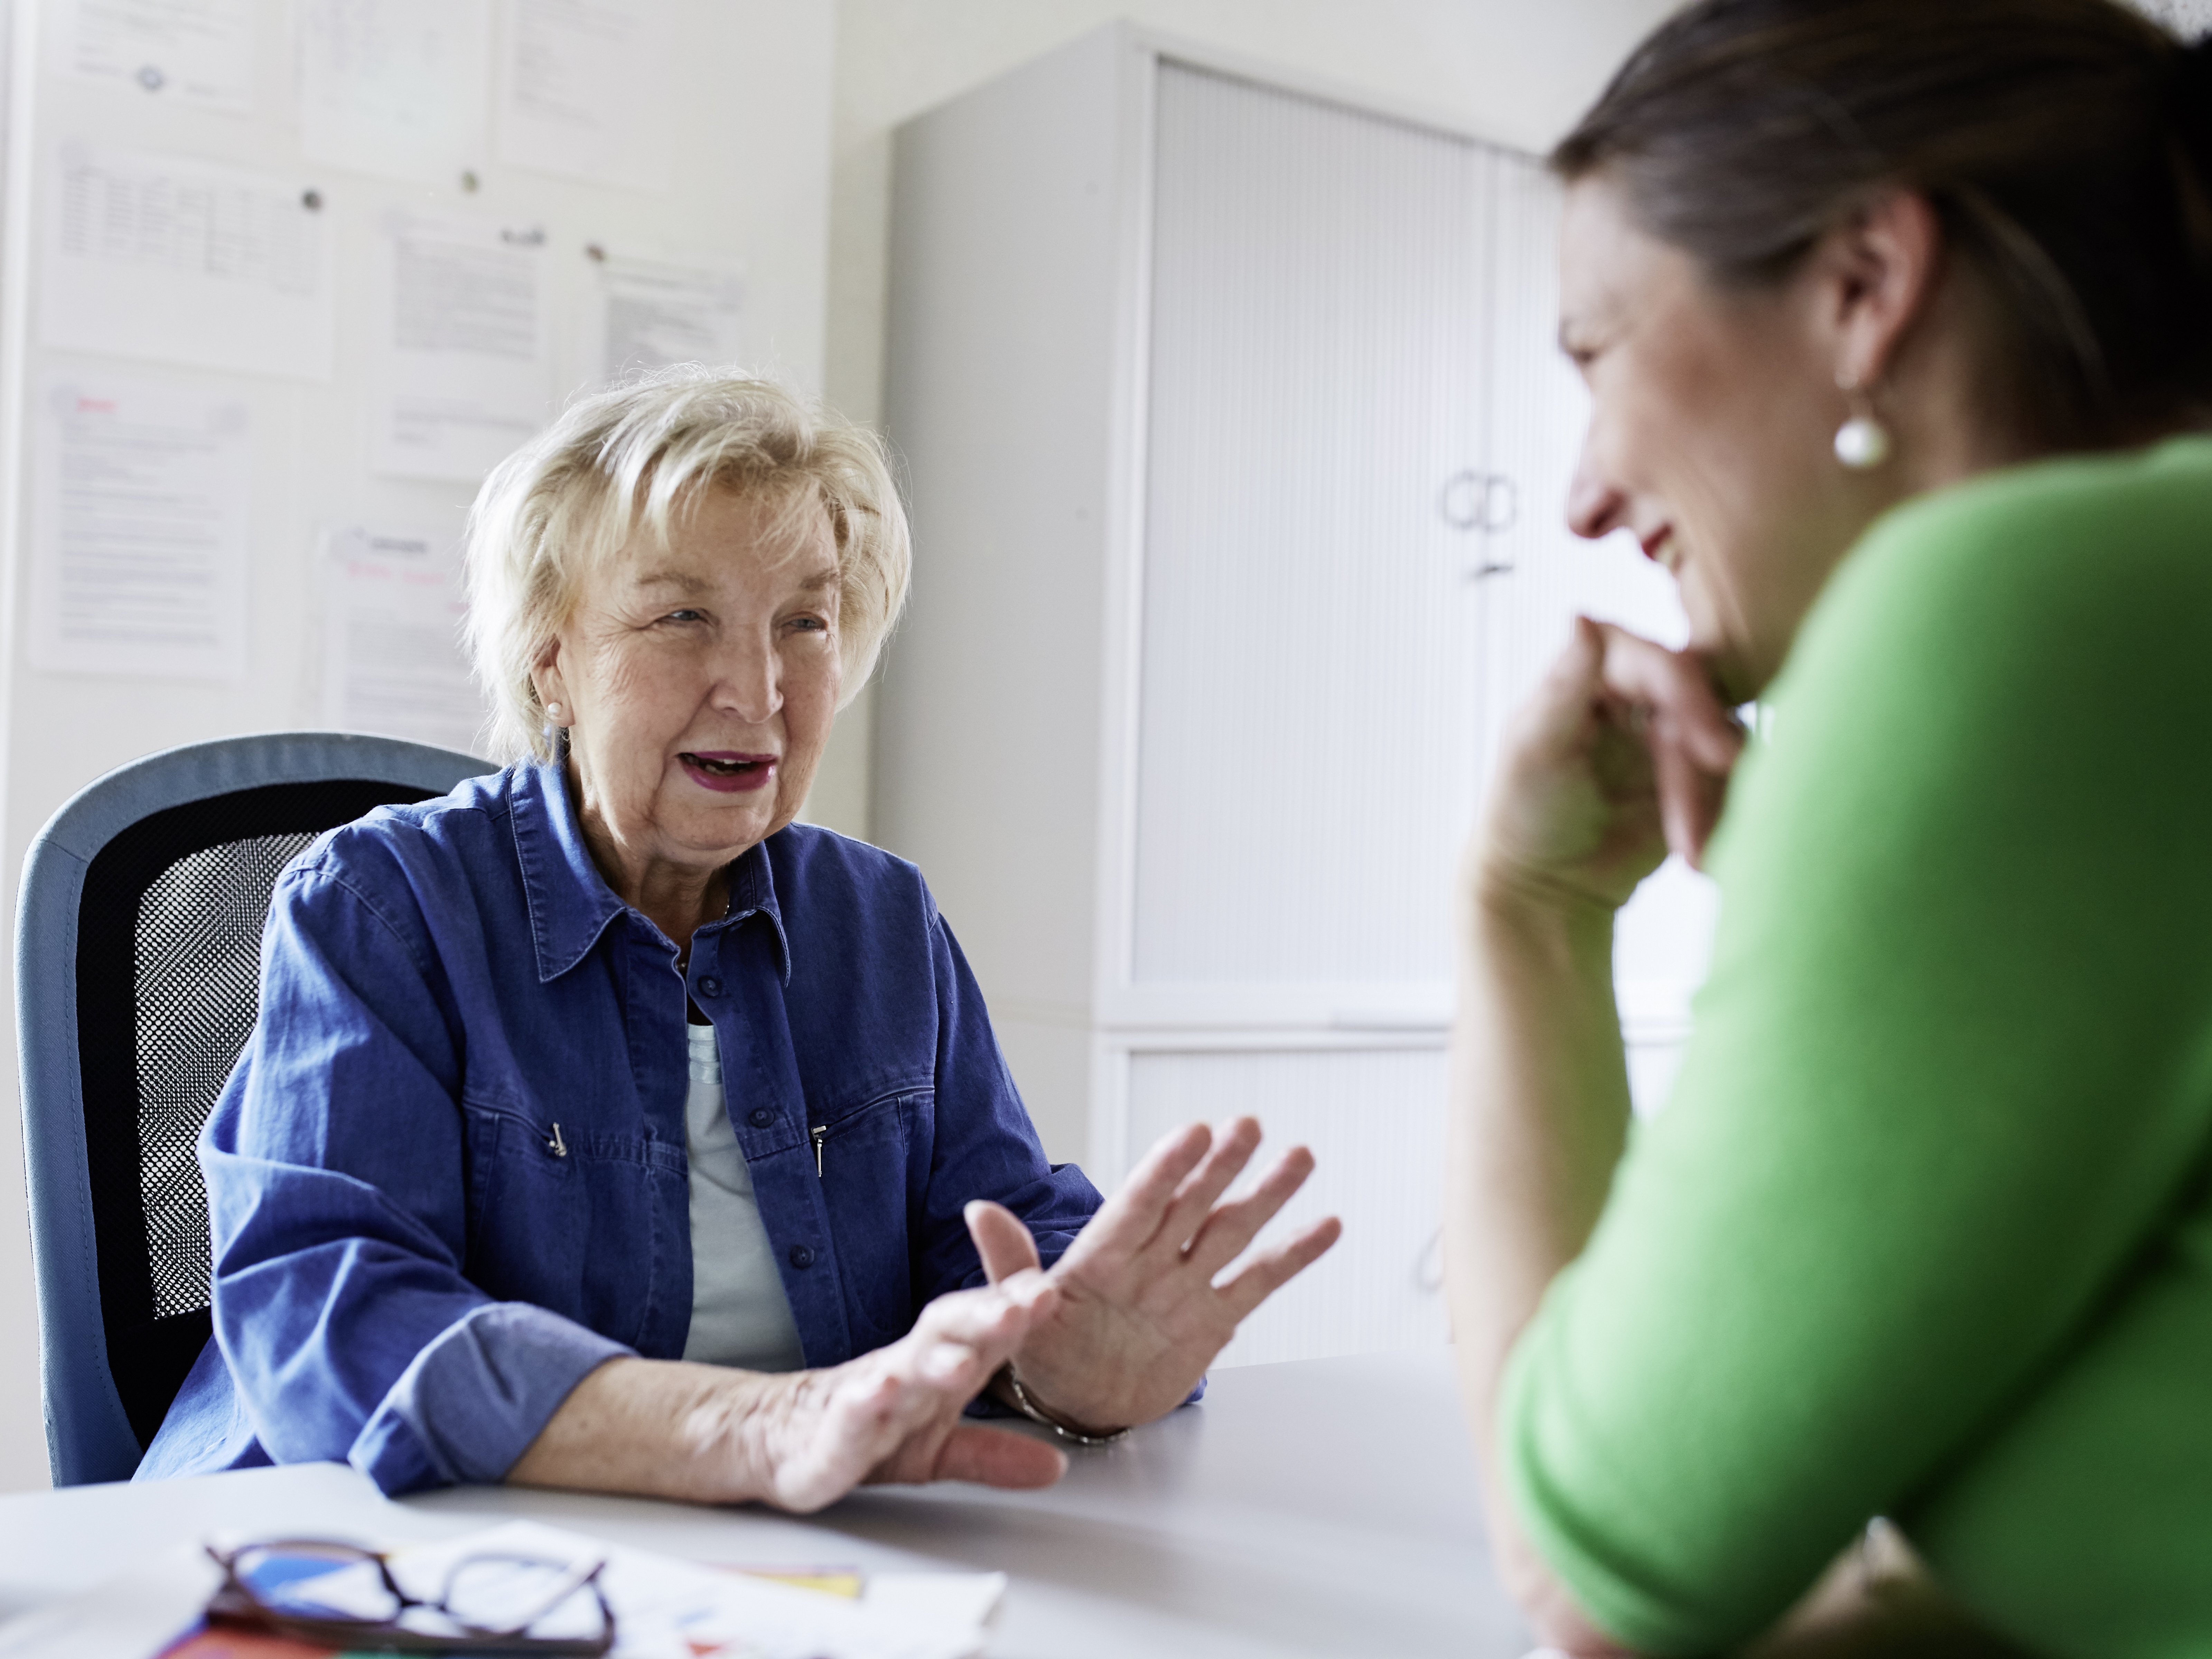 Foto: Eine ältere Frau wird von einer Mitarbeiterin des Betreuungsvereins beraten.